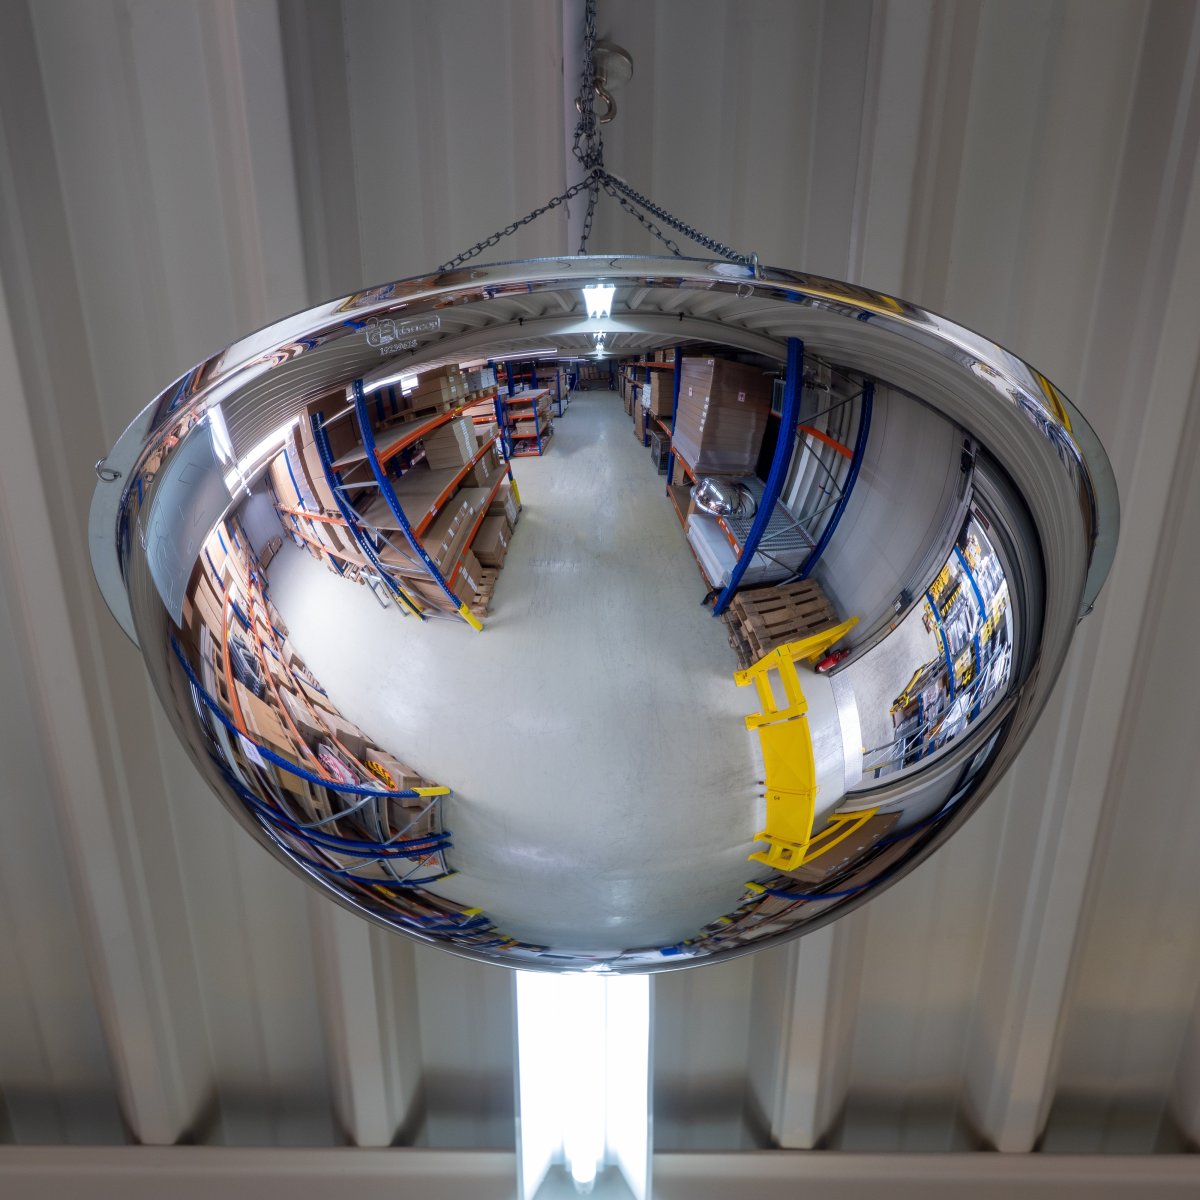 Spejlkuppel, 360 grader, akryl, 60 cm